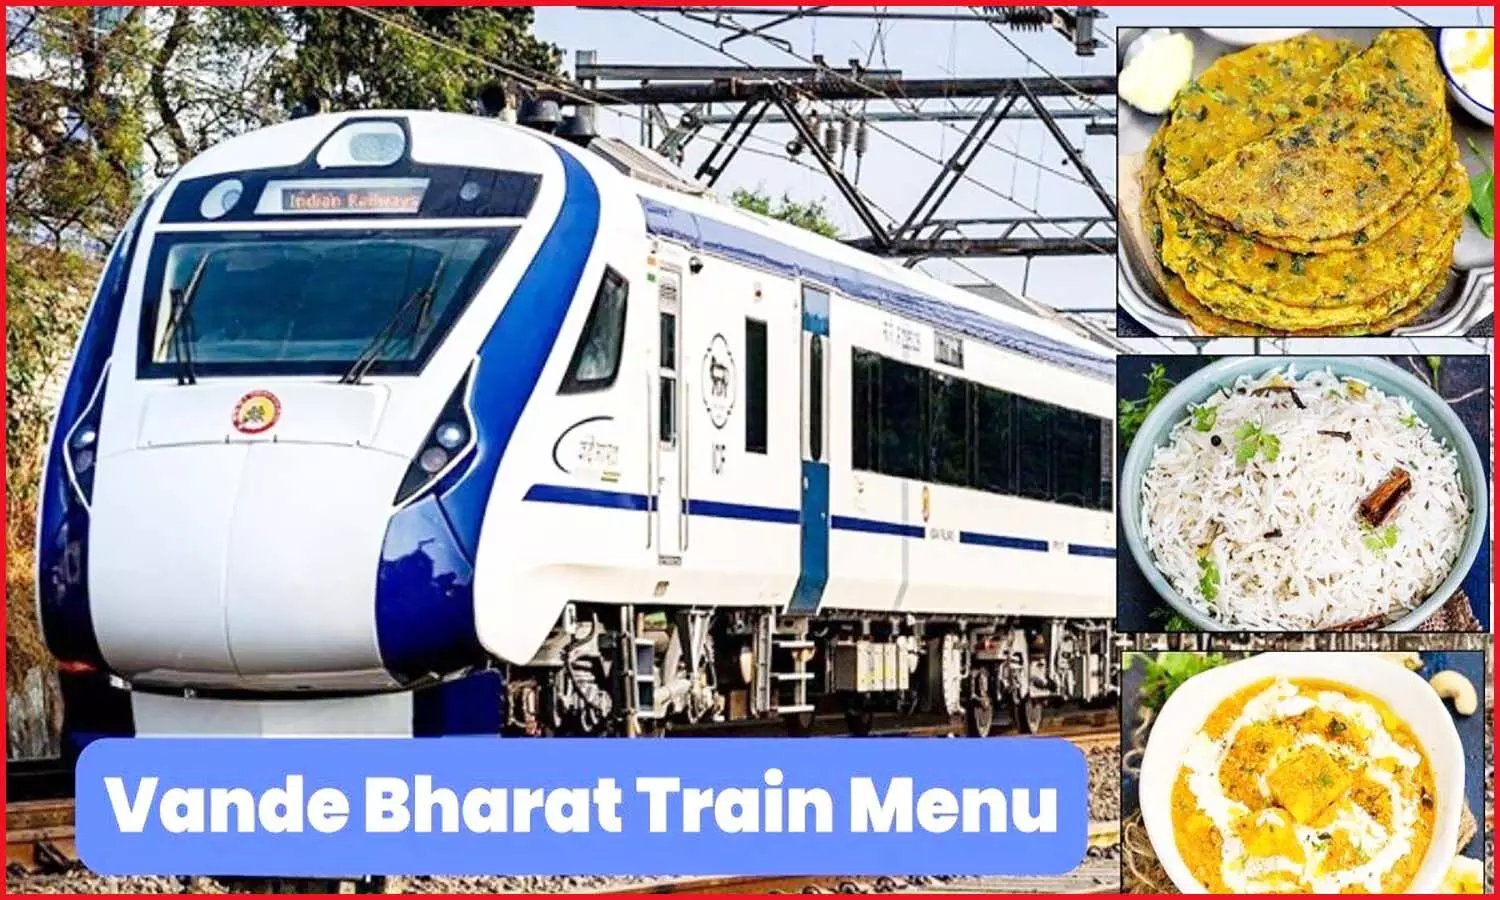 Vande Bharat Train Menu: भोपाल-दिल्ली वंदे भारत एक्सप्रेस में सफर के दौरान खाने को मिलेगा पनीर लबाबदार व मेठी पराठा, यहां पर देखें मेन्यू